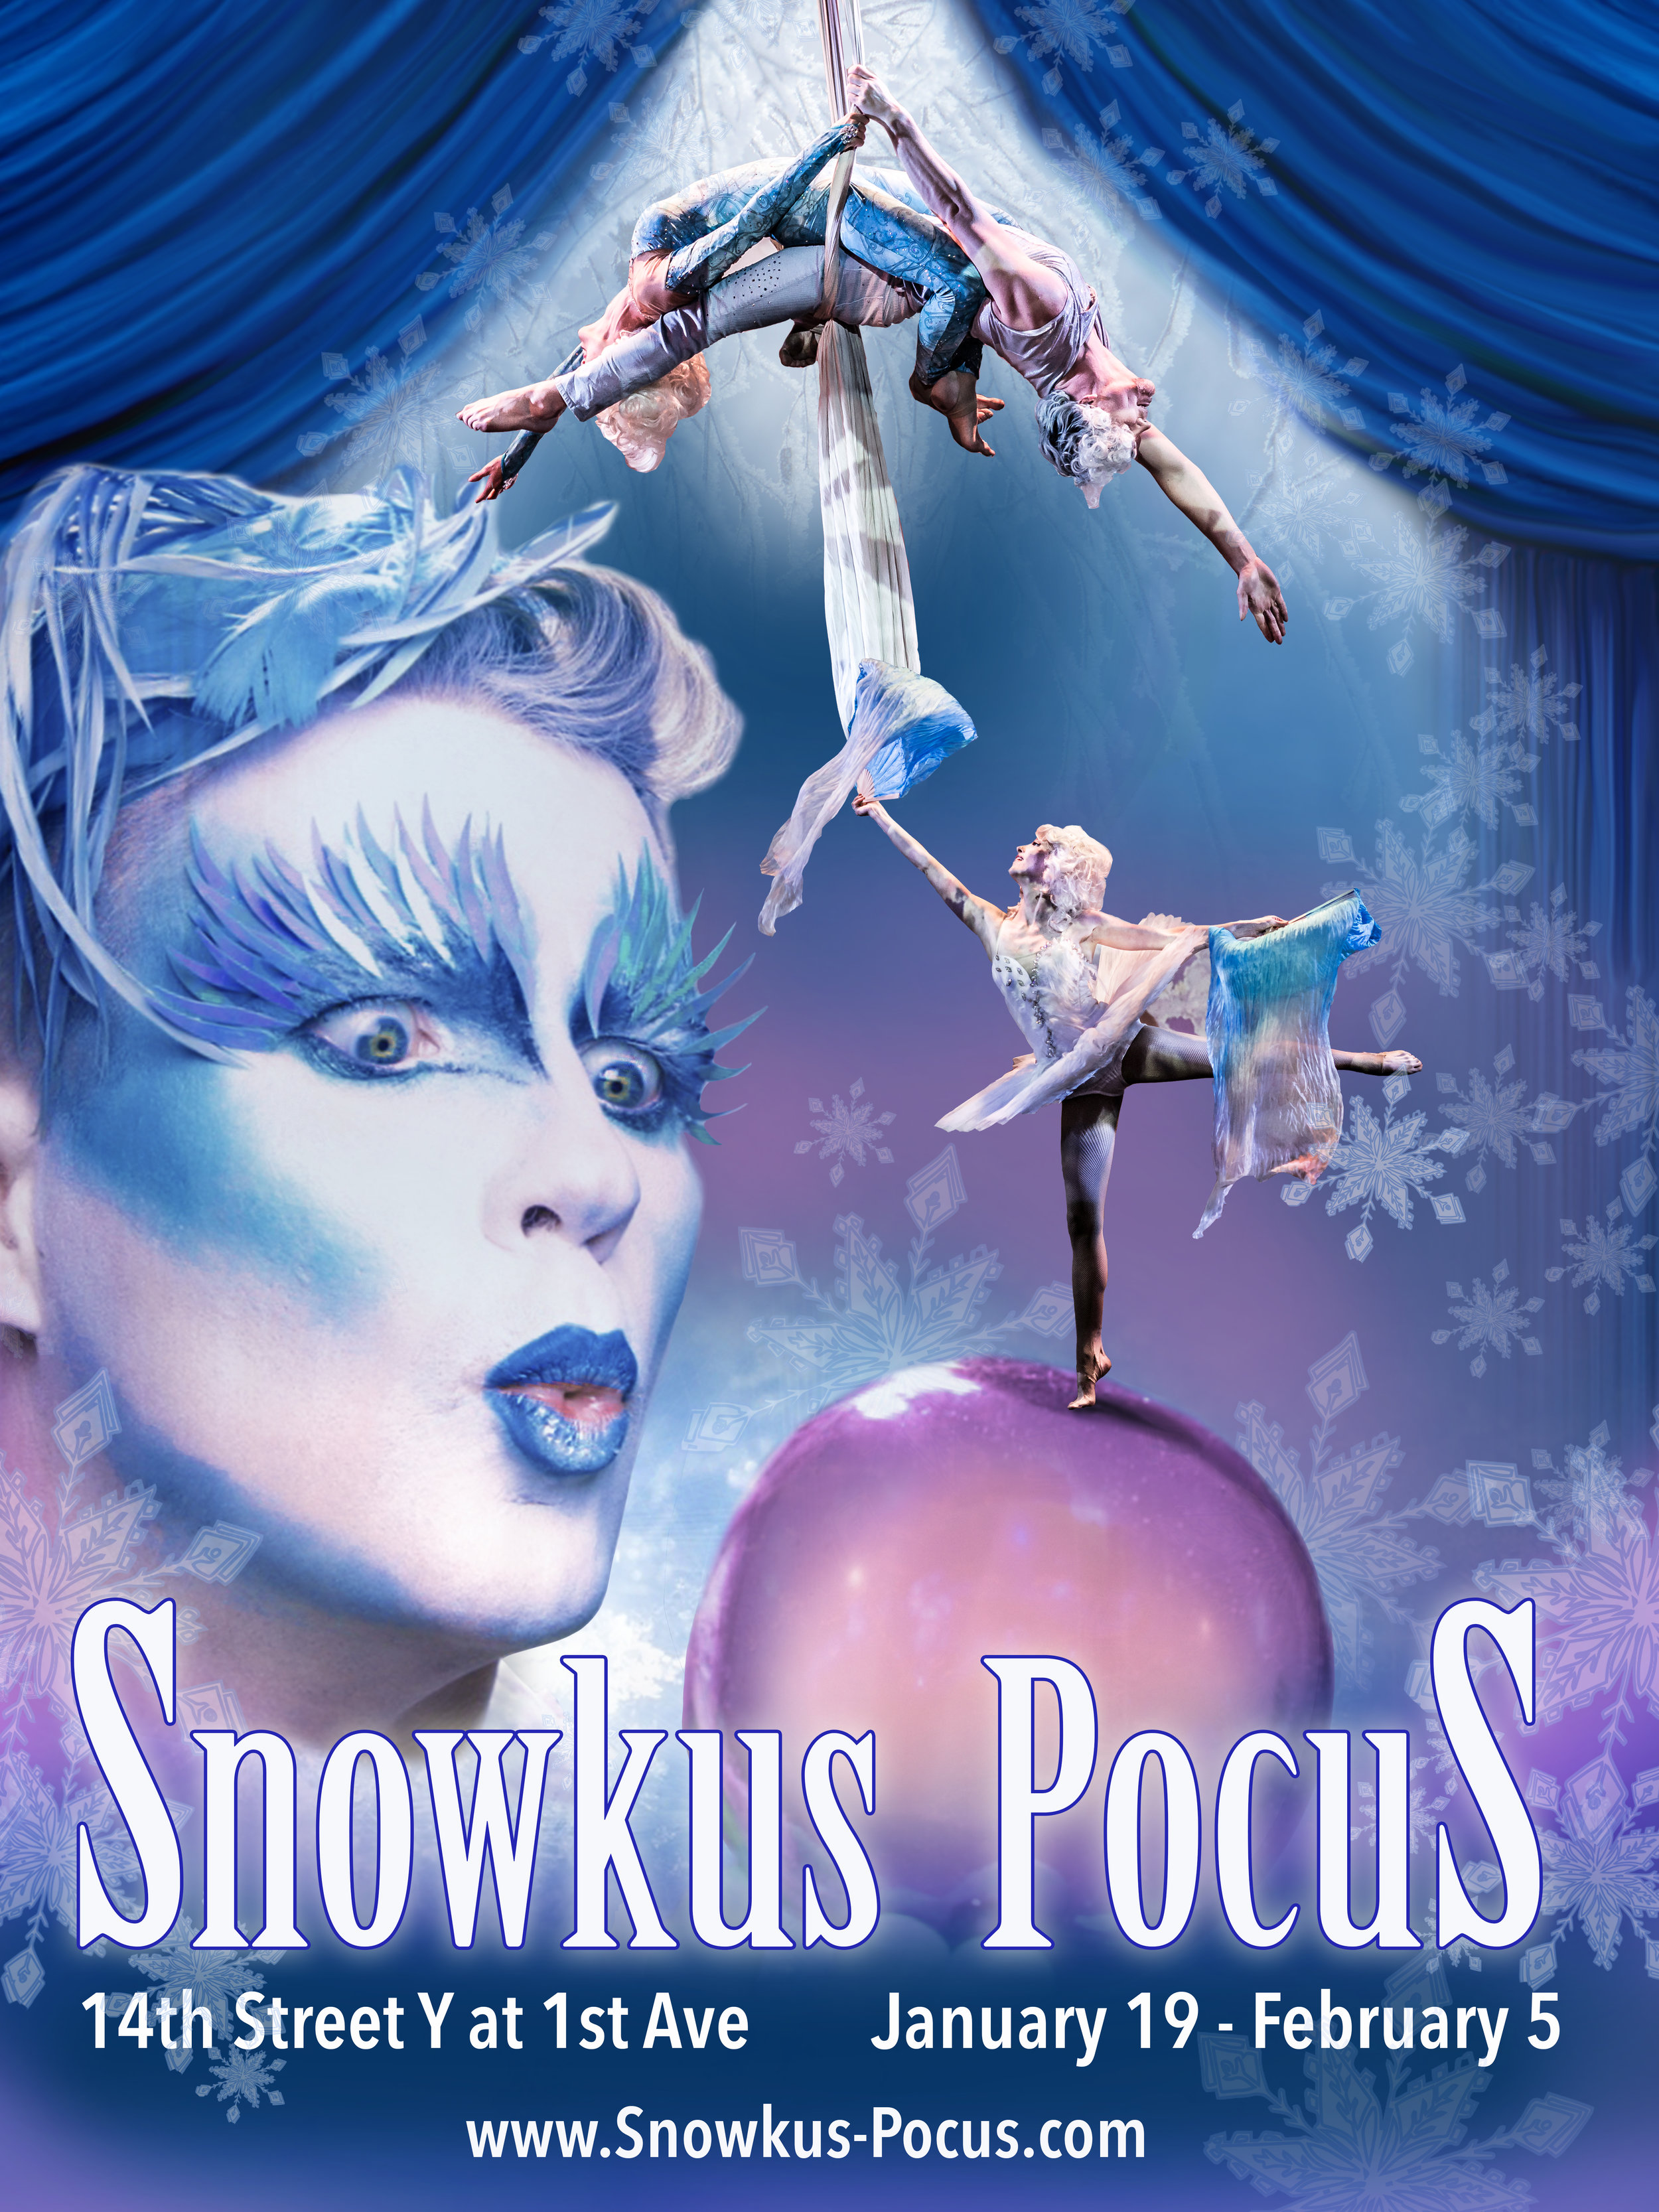 Snowkus Pocus - Poster - 14th St. Y - 2017 - version 1 - Hir-res.jpg